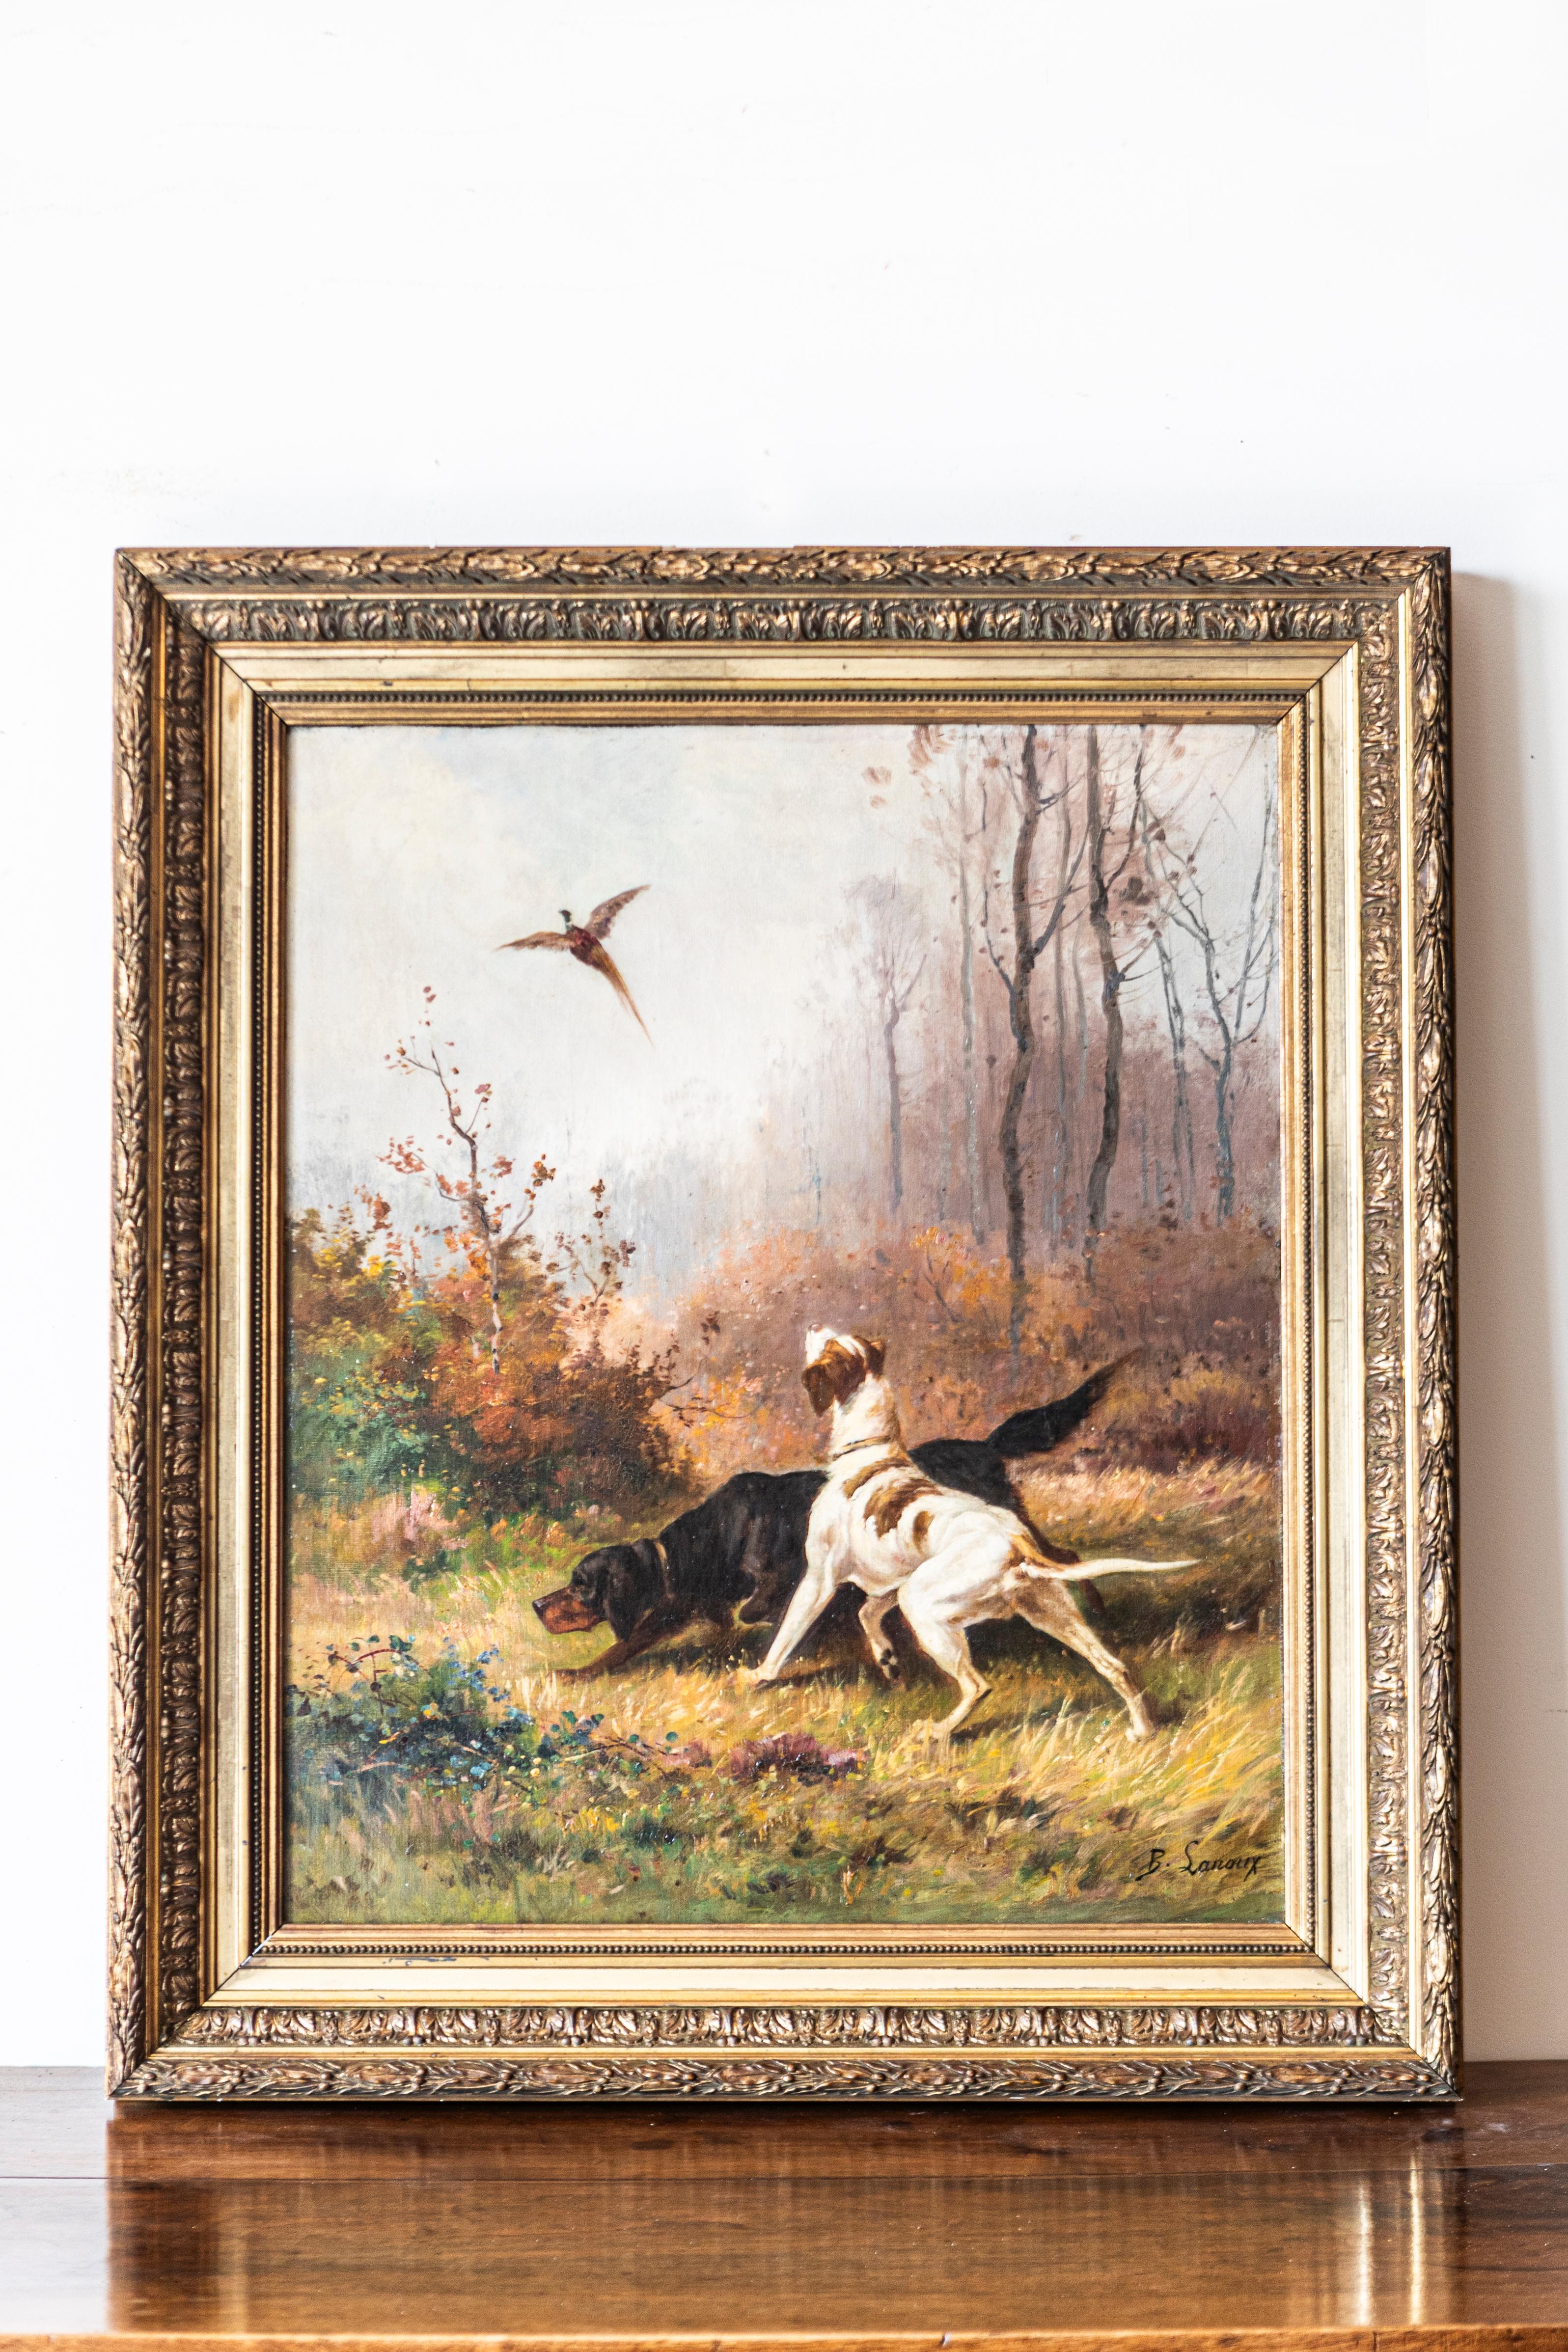 Huile sur toile française du 19e siècle signée par B. Lanoux représentant deux chiens de chasse et un faisan. Cette captivante huile sur toile française du XIXe siècle de B. Lanoux, un artiste distingué dont la vie s'est étendue sur les XIXe et XXe